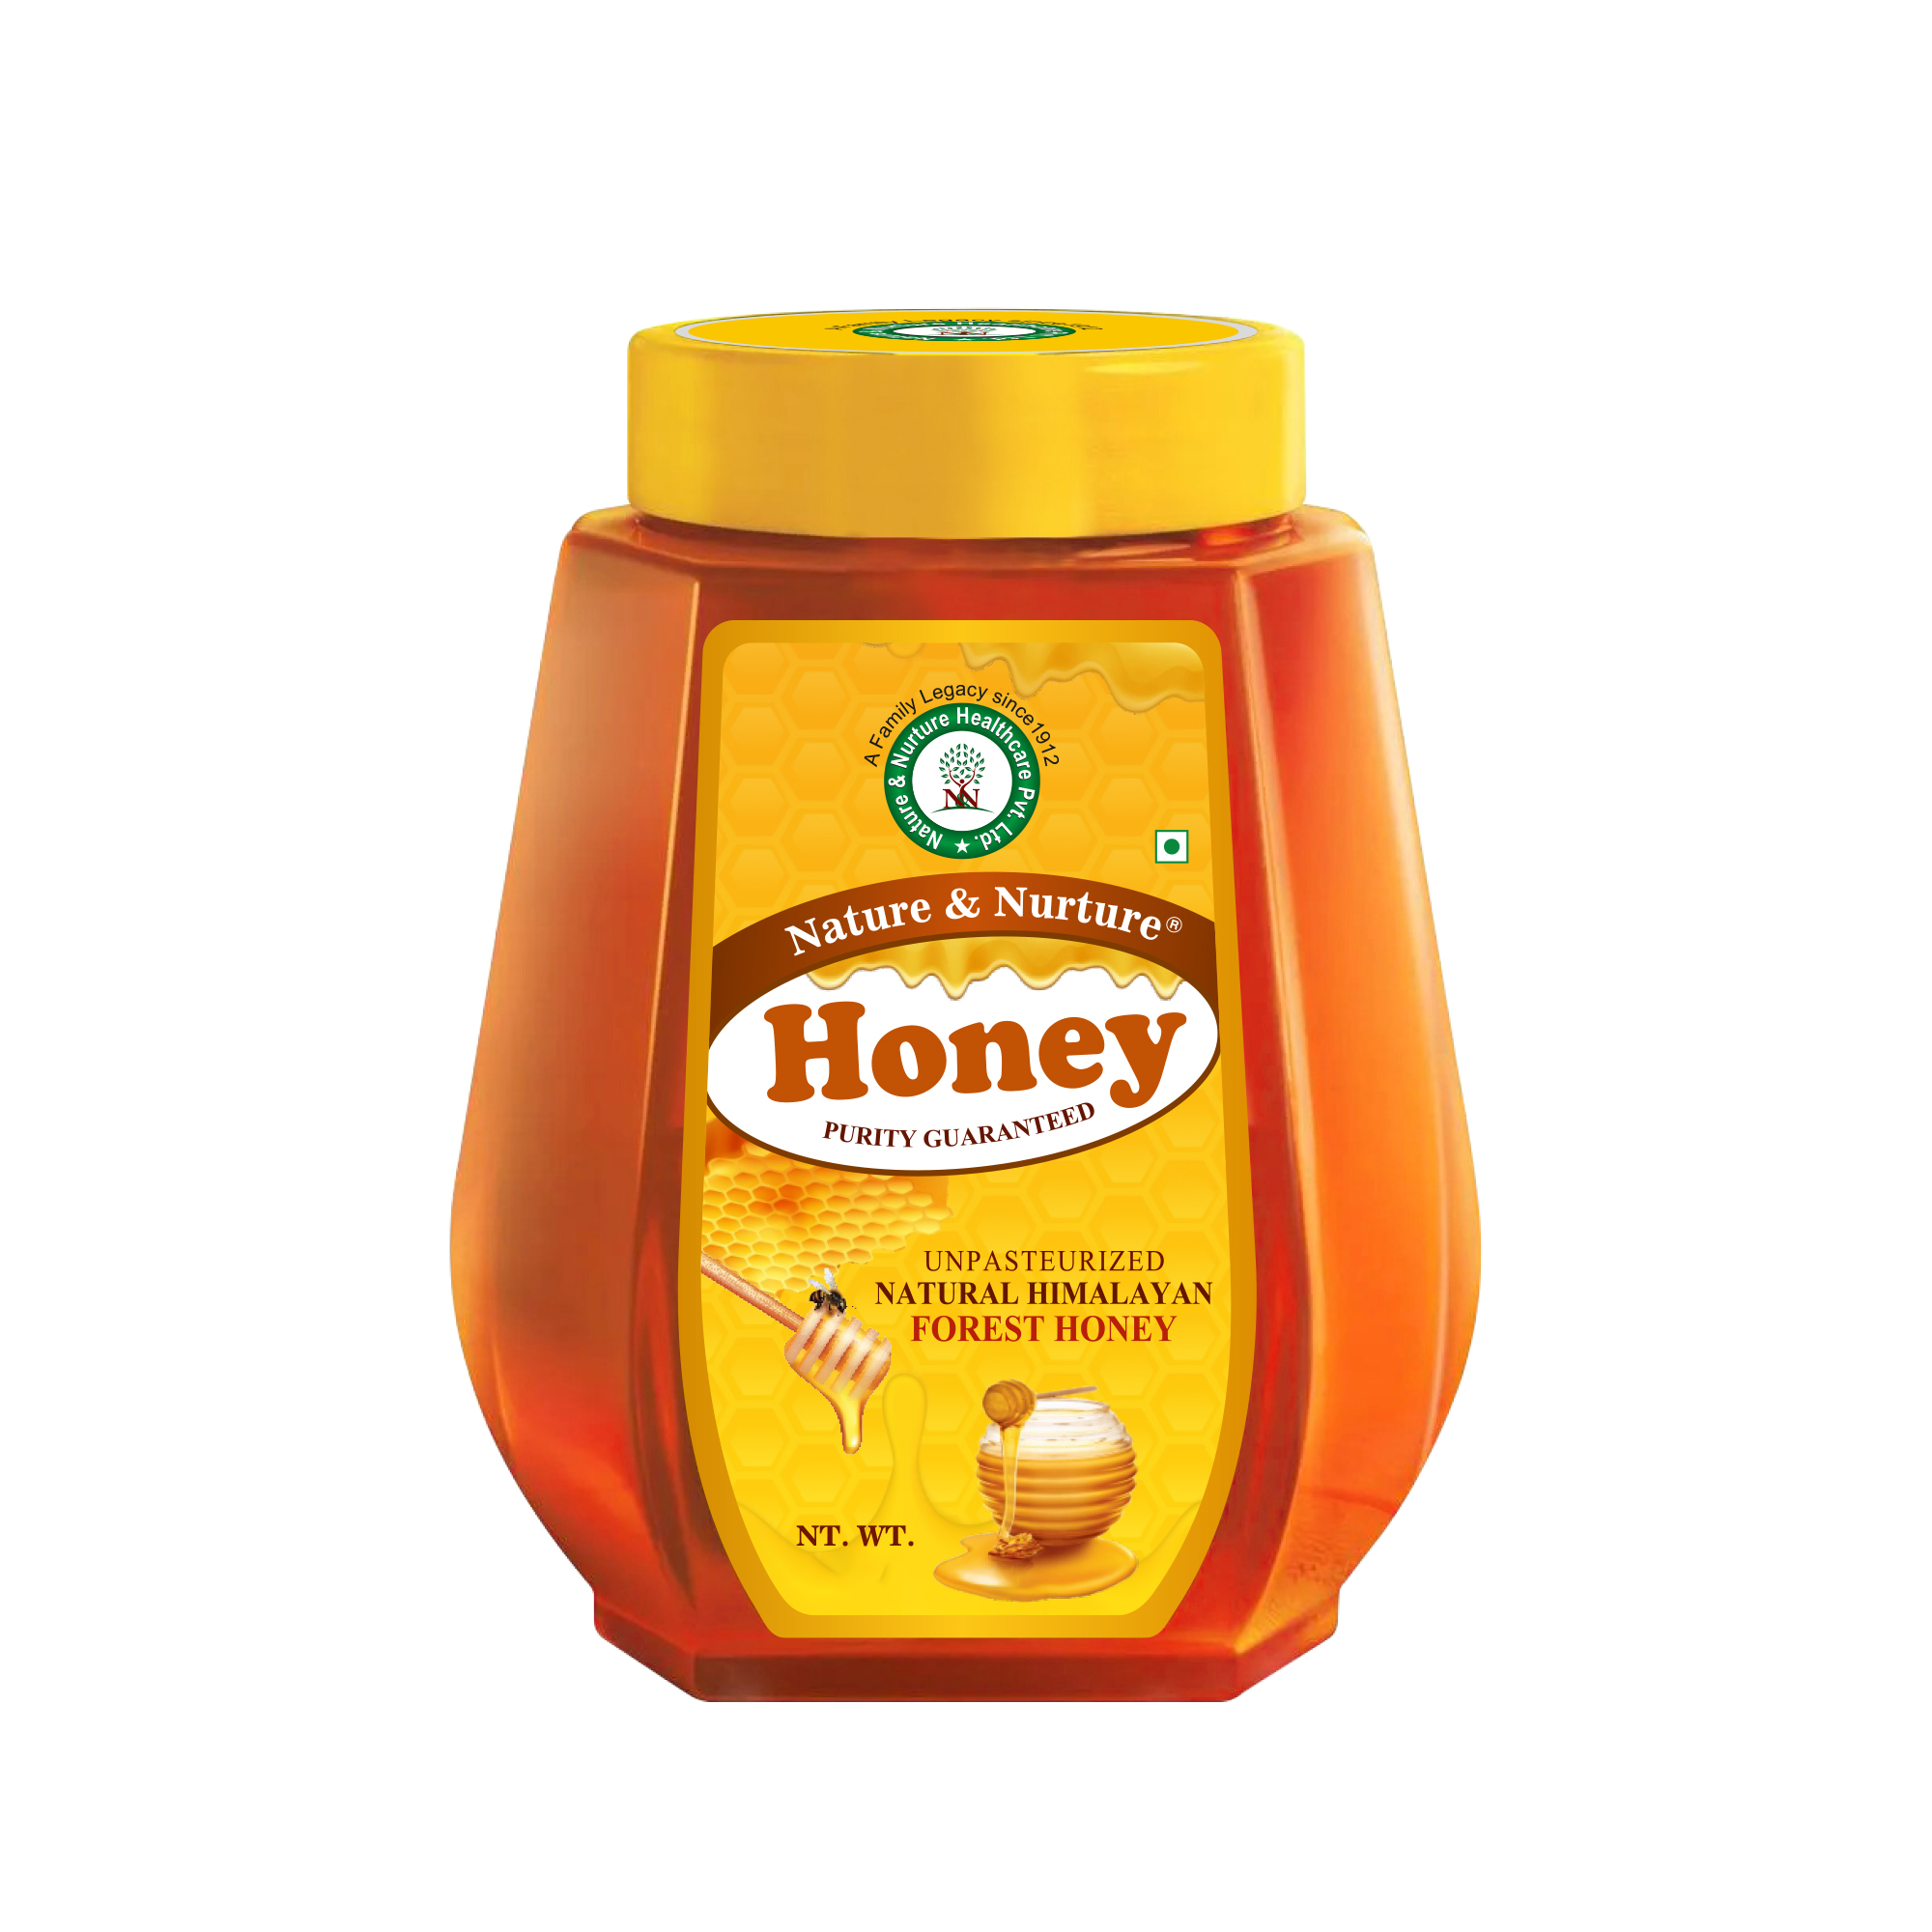 Nature & Nurture Honey 1 KG